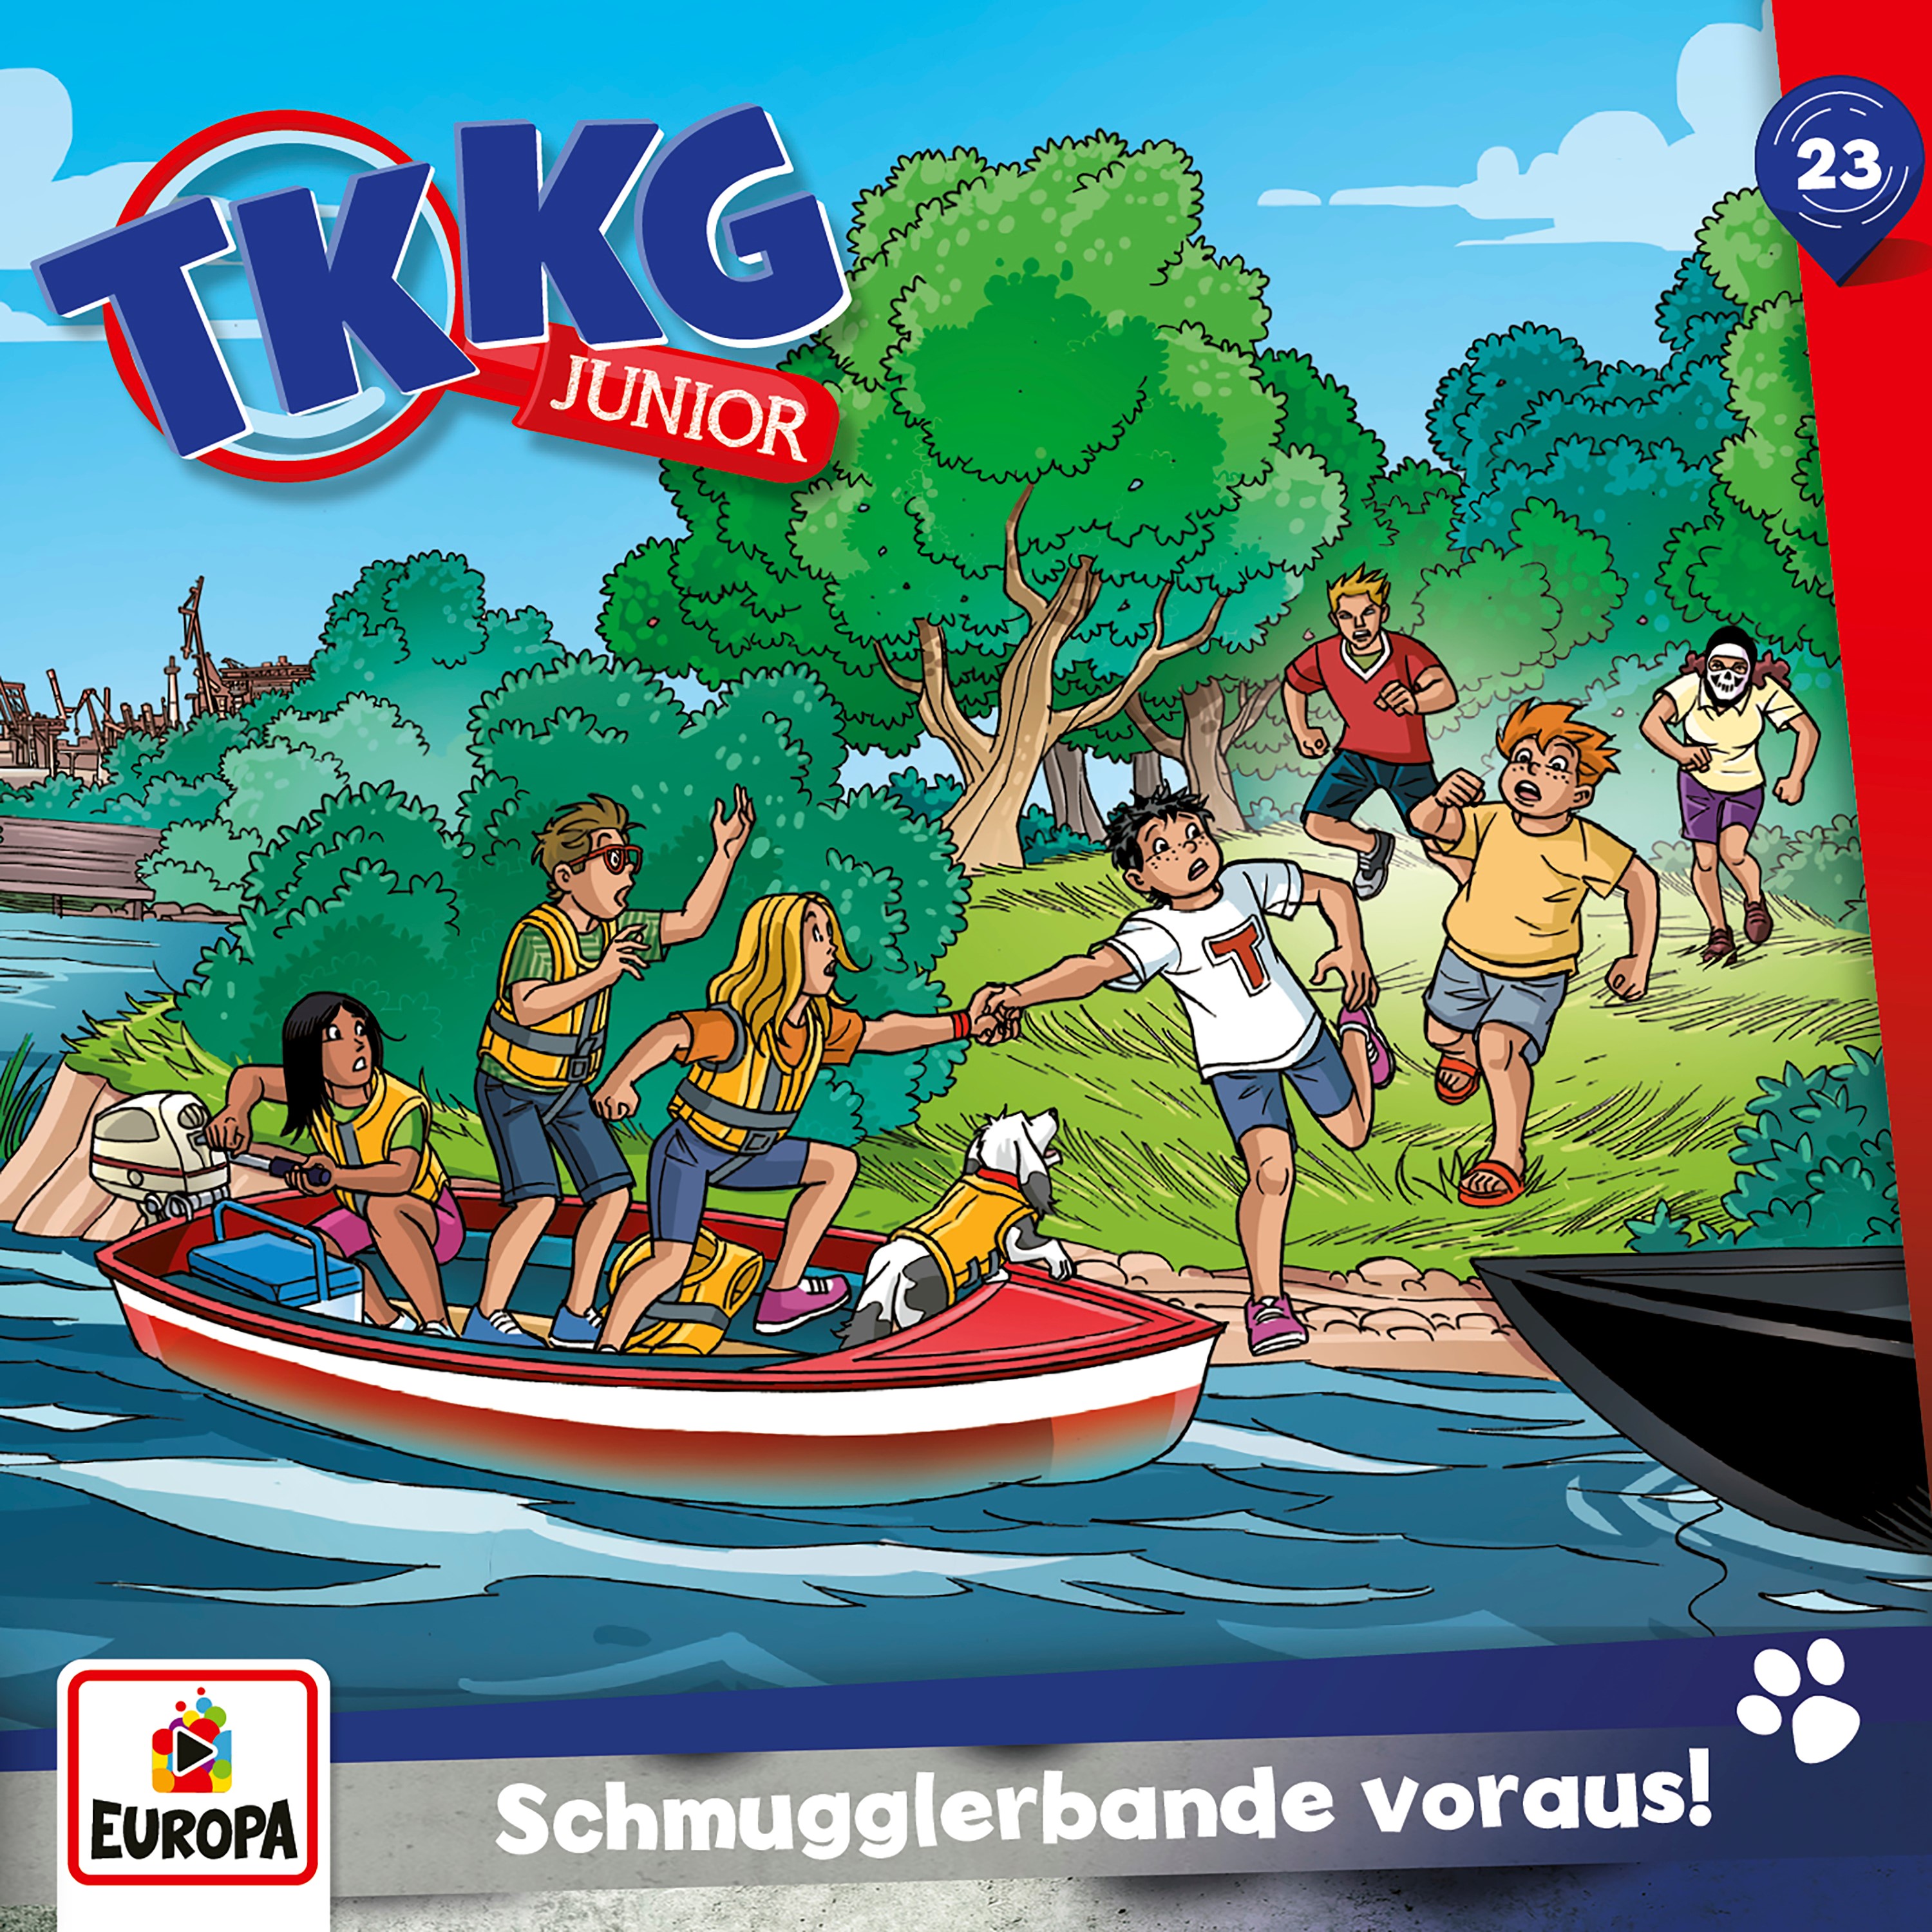 TKKG Junior: Schmugglerbande voraus!